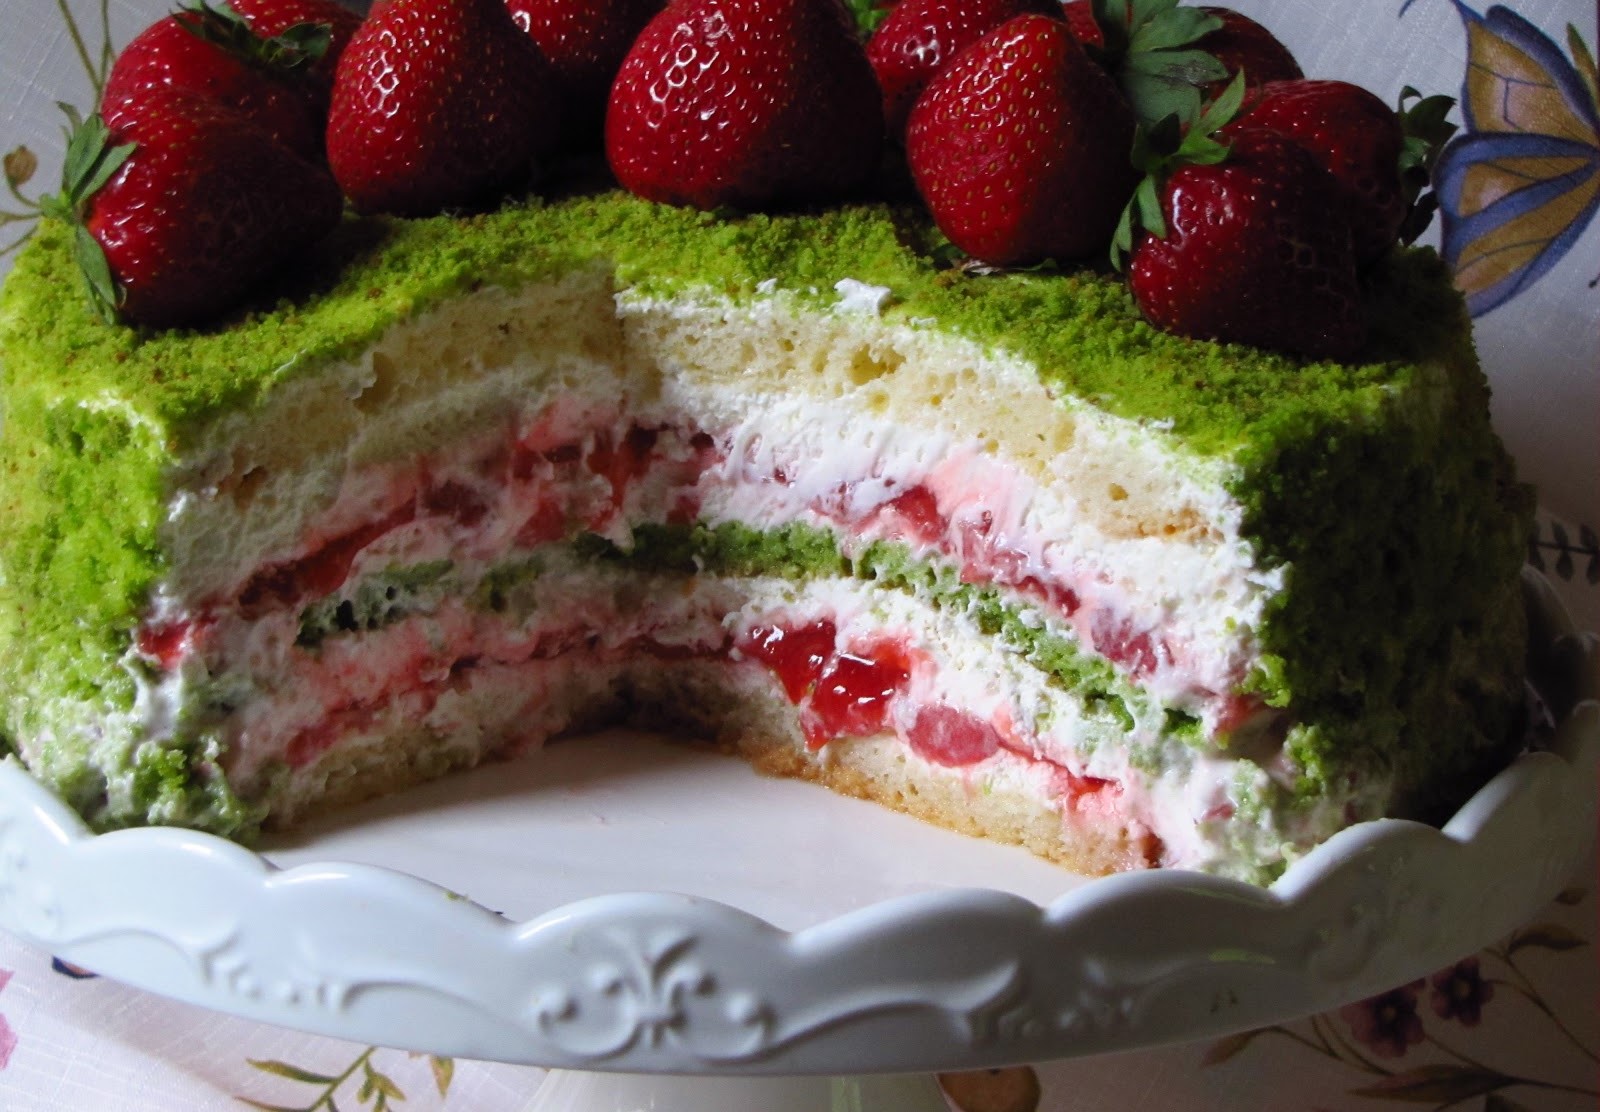 Самые красивые торты для мам — фото идеи тортов, которыми можно порадовать мамочку